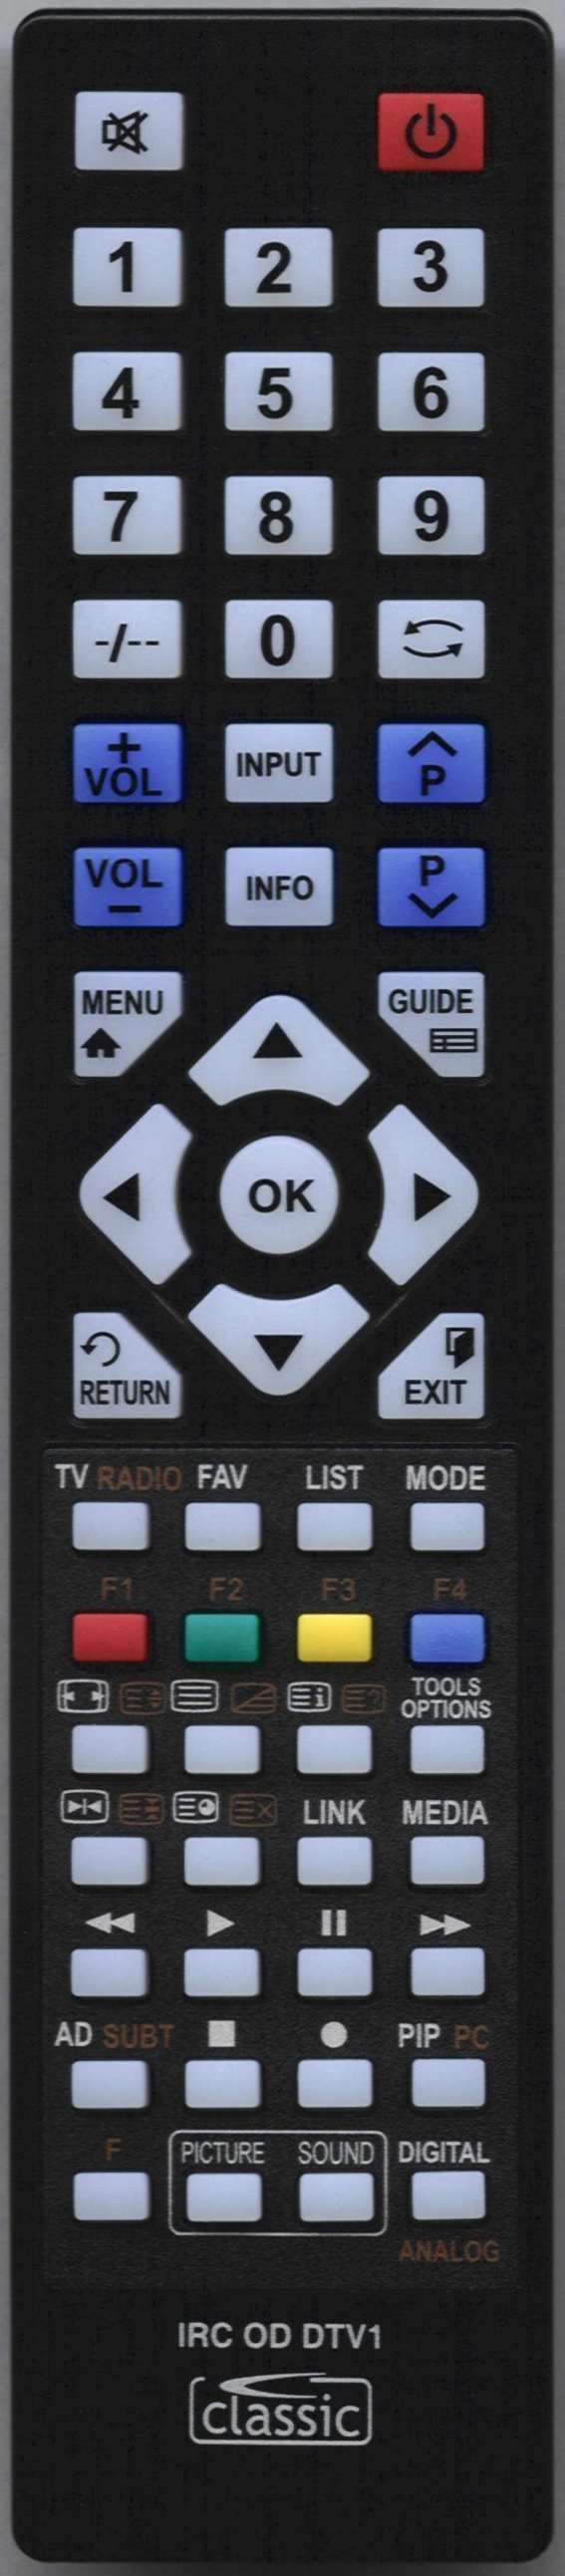 LUXOR 10043114 Remote Control Alternative